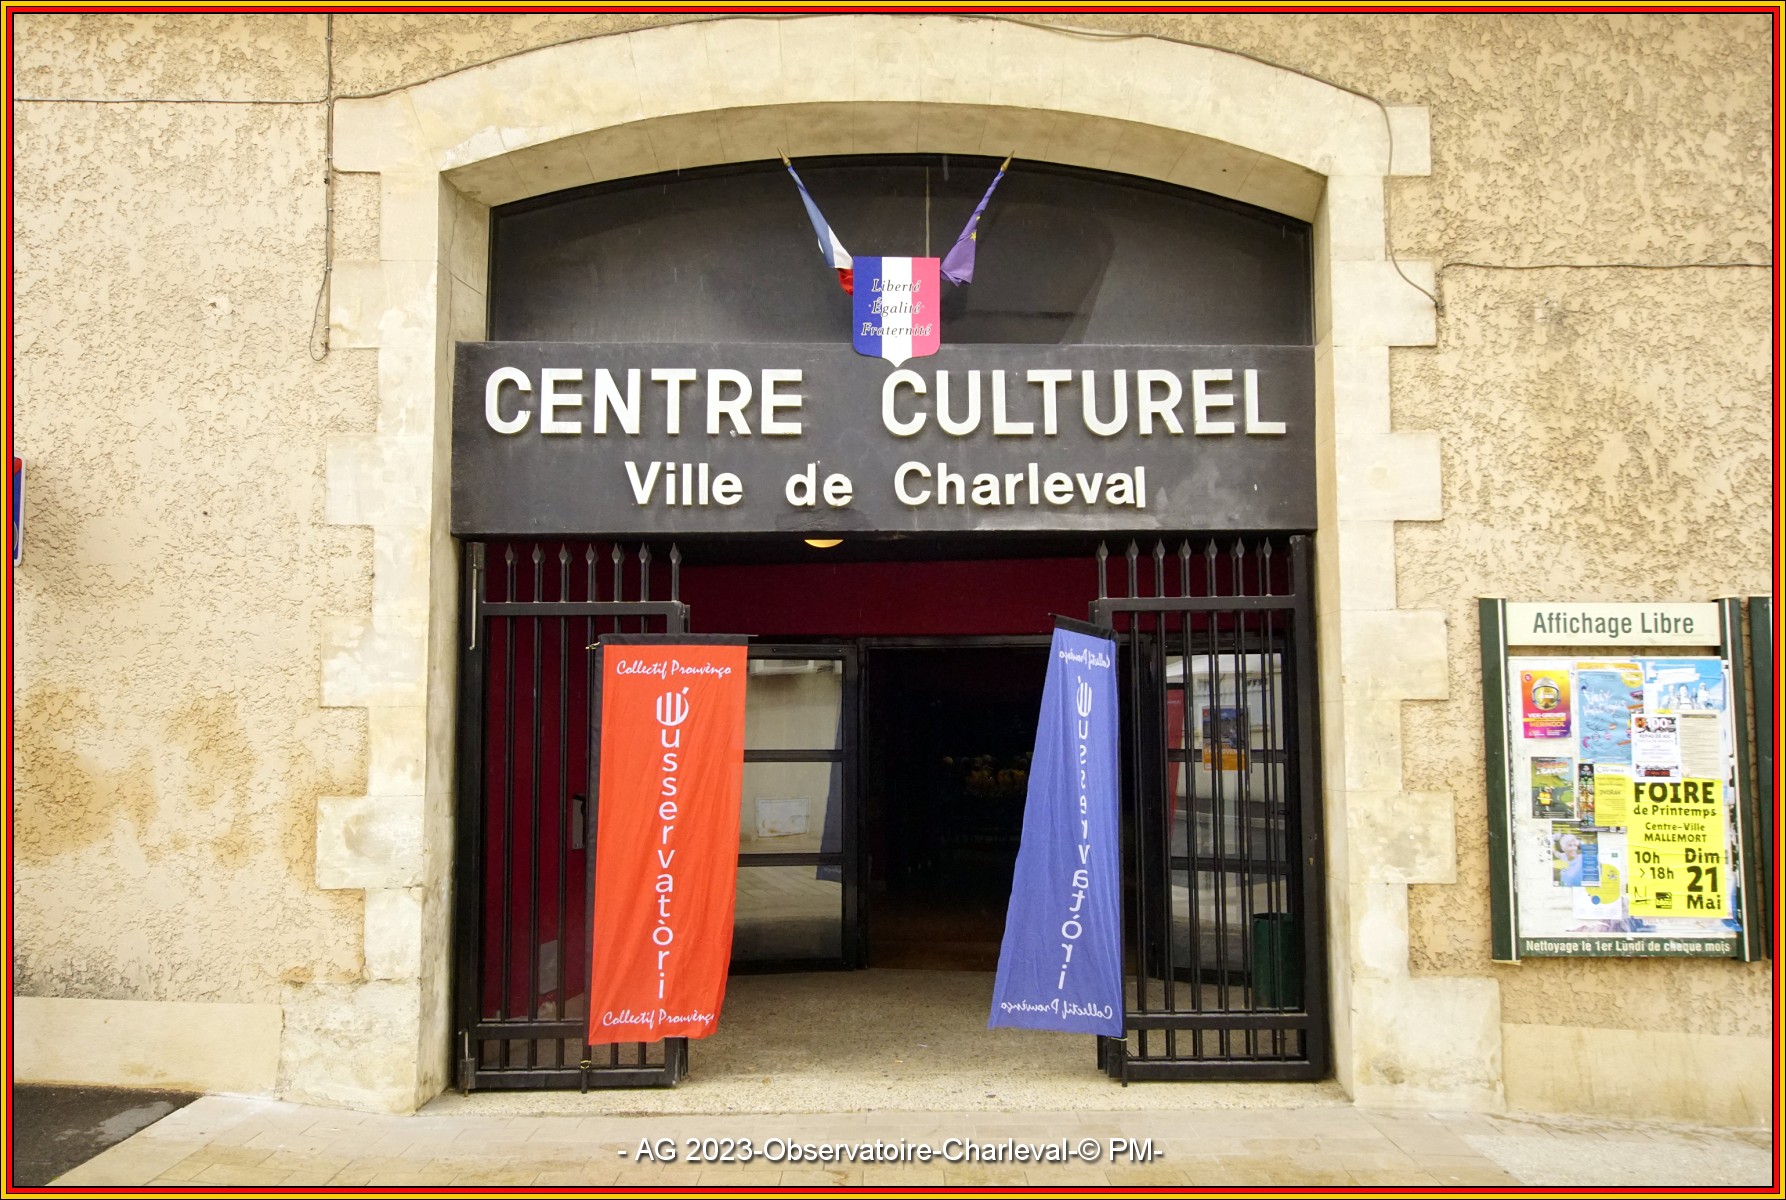 Centre culturel de Charleval où s'est tenue l'AG